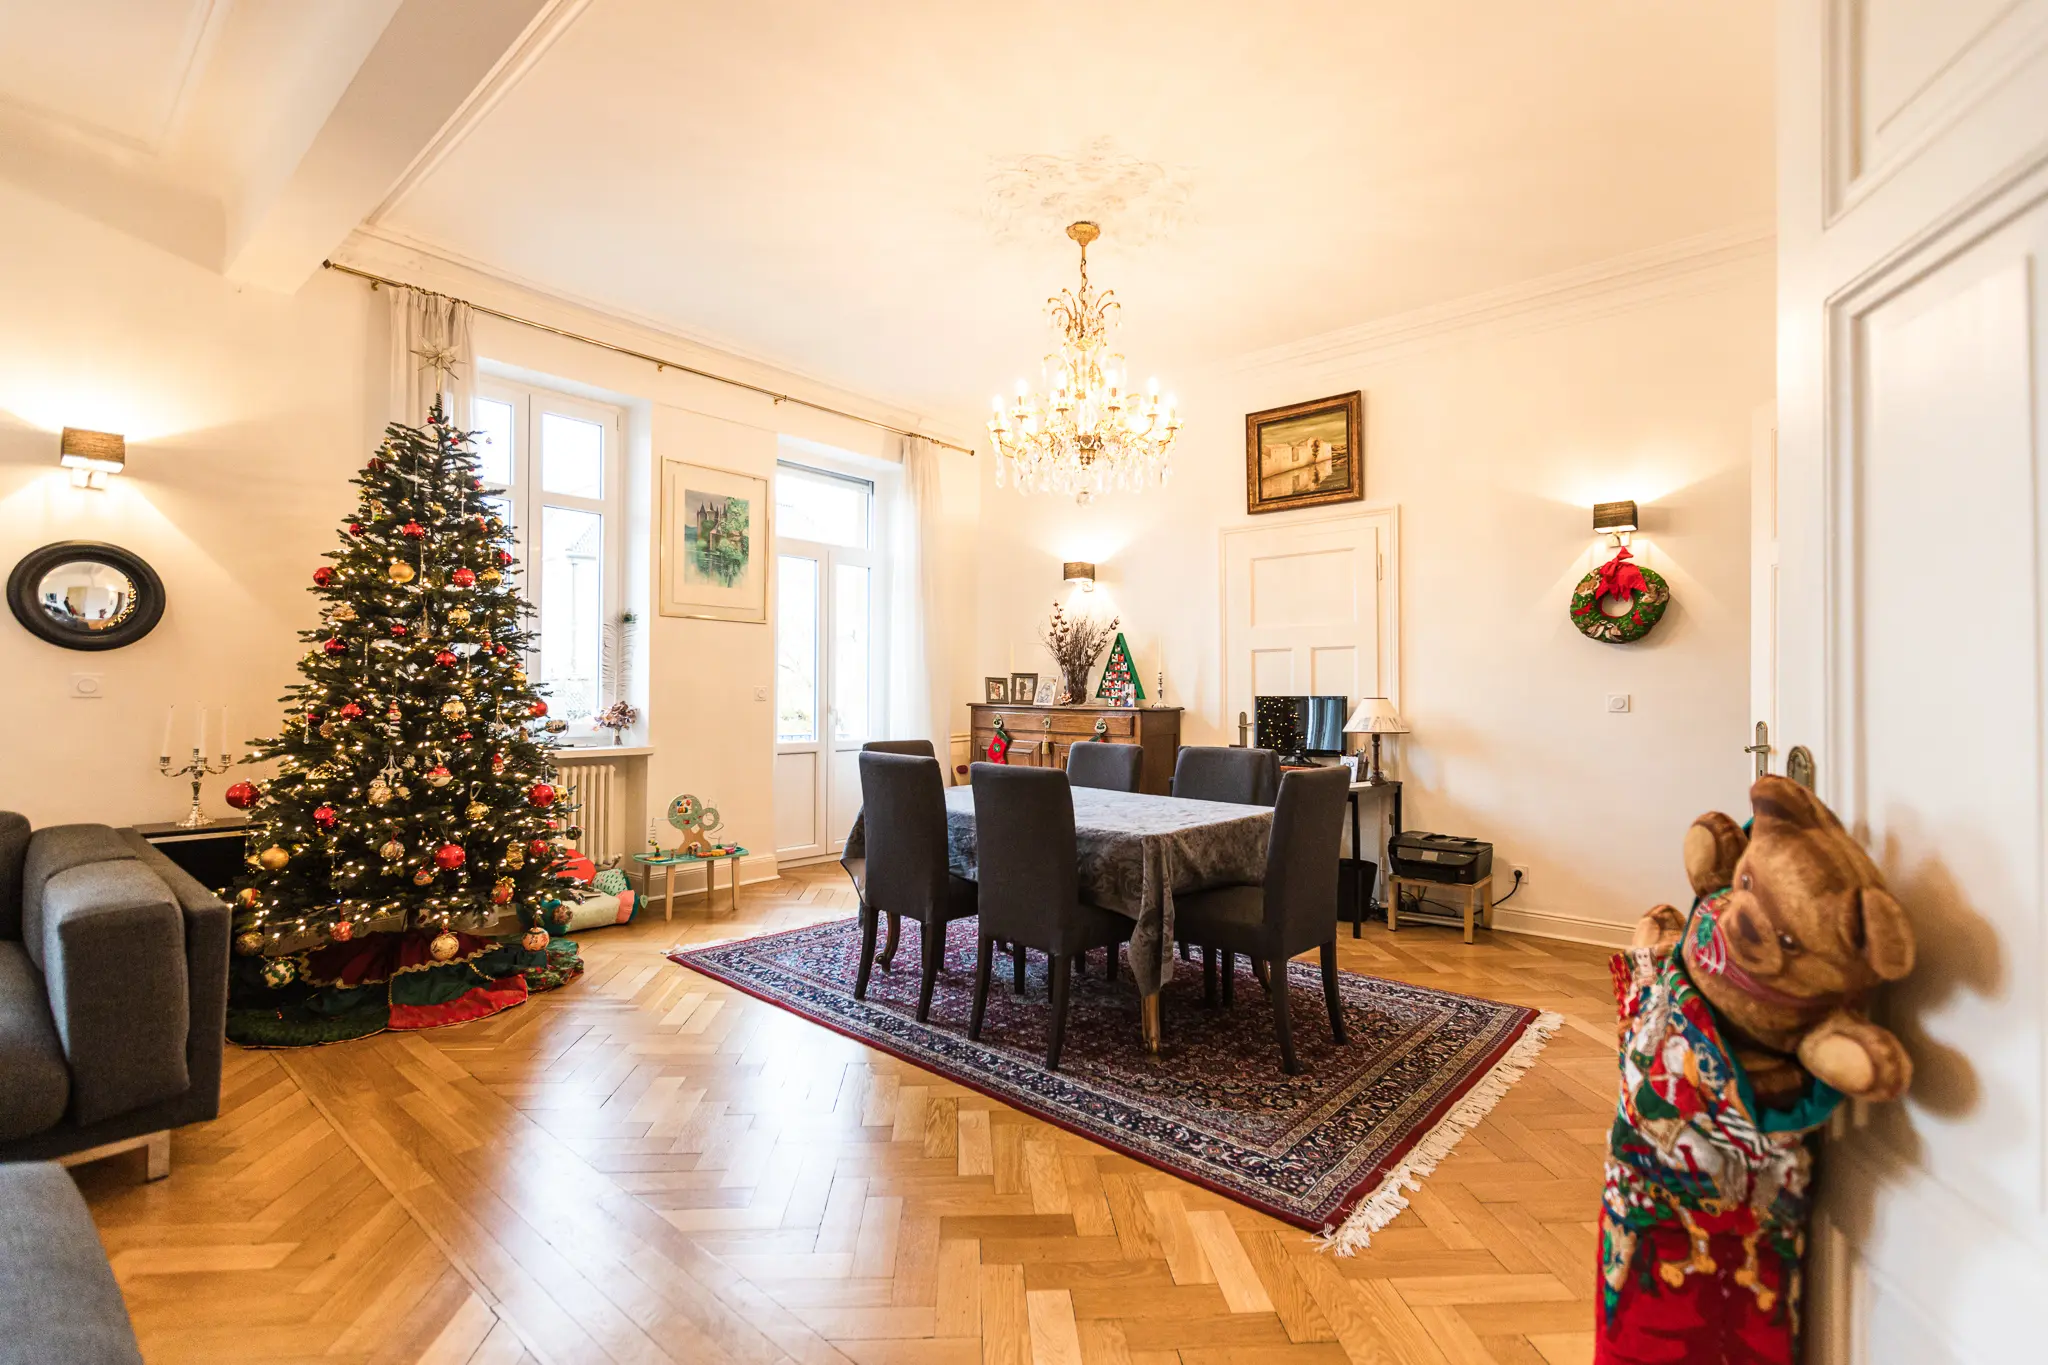 Photo immobilière HDR d'une salle à manger avec un sapin de Noël.